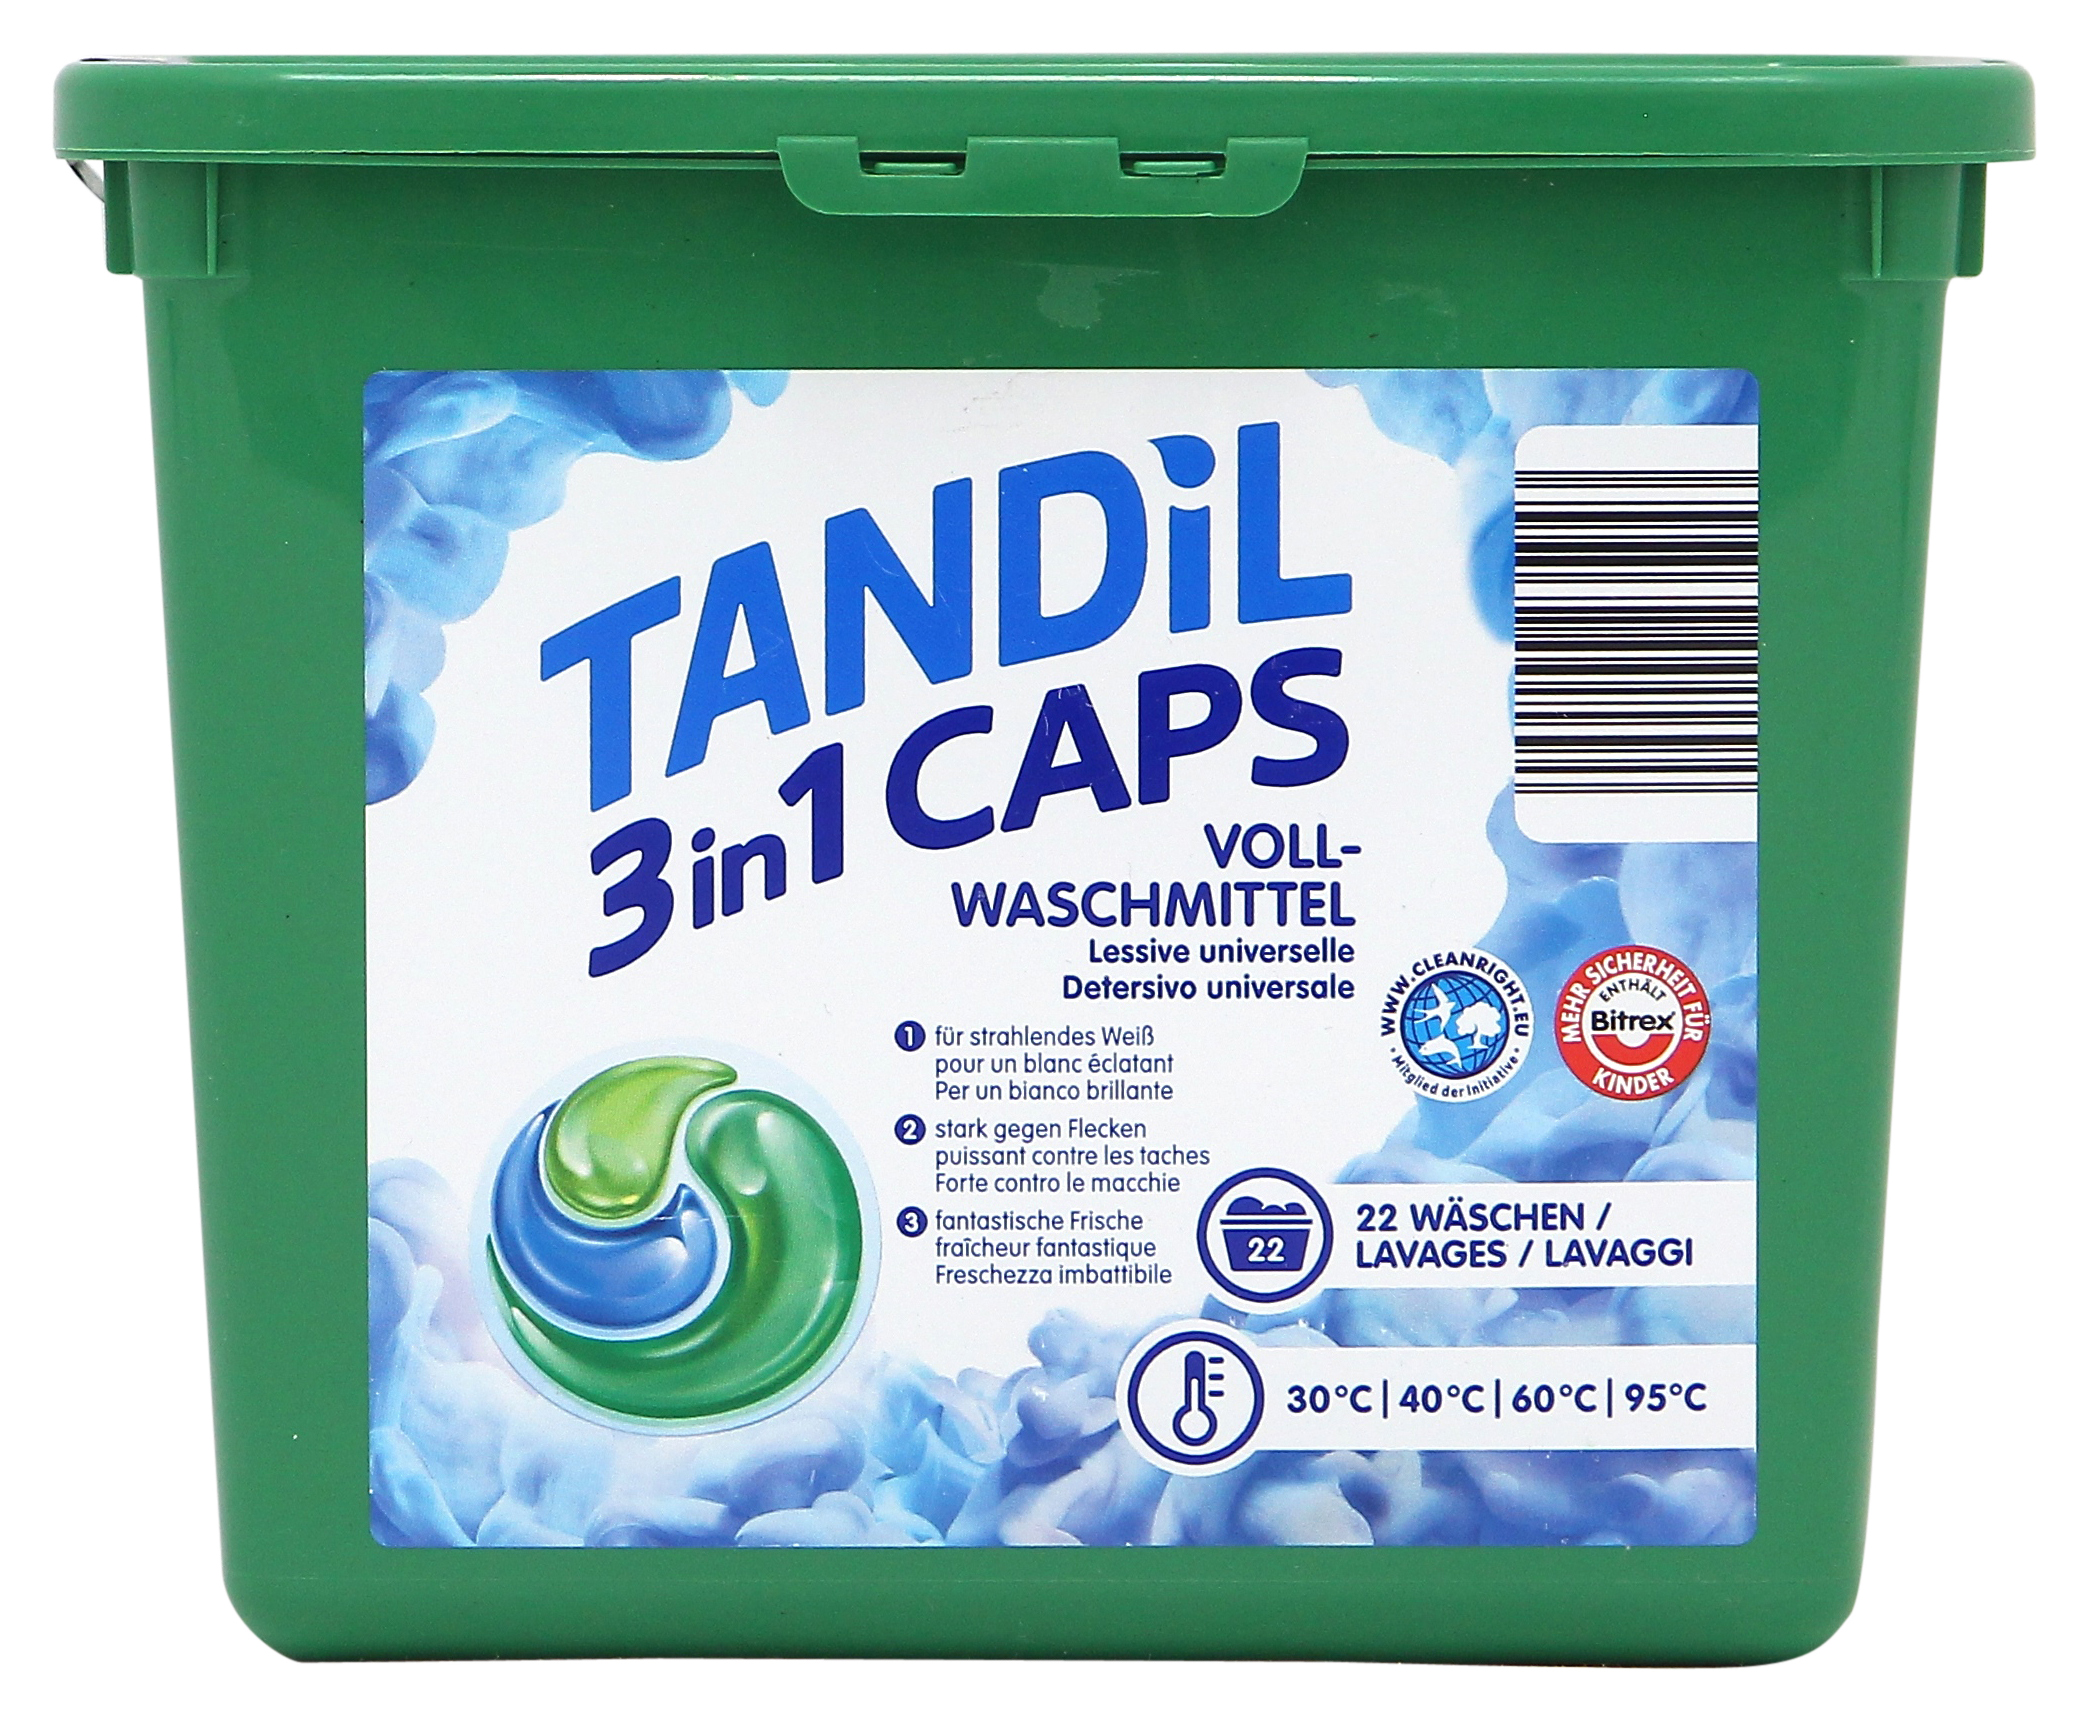 TANDIL (ALDI) 3IN1 CAPS DETERSIVO UNIVERSALE